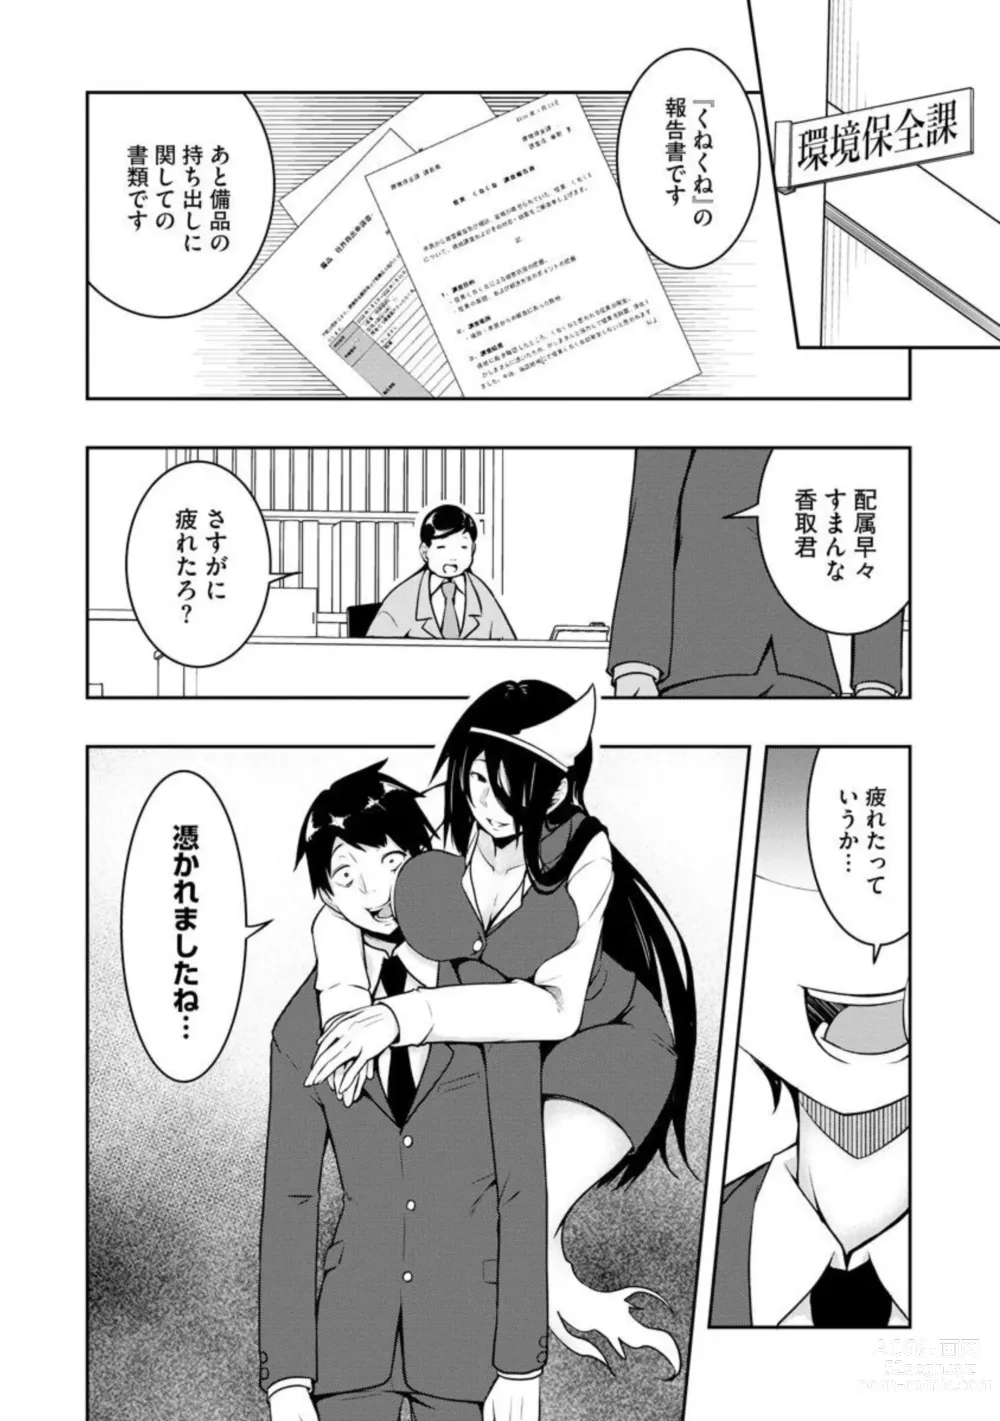 Page 29 of manga Kai 淫 Anata no Mono de Ikasetekudasai … Hontōha Yarashī Toshi Densetsu 1